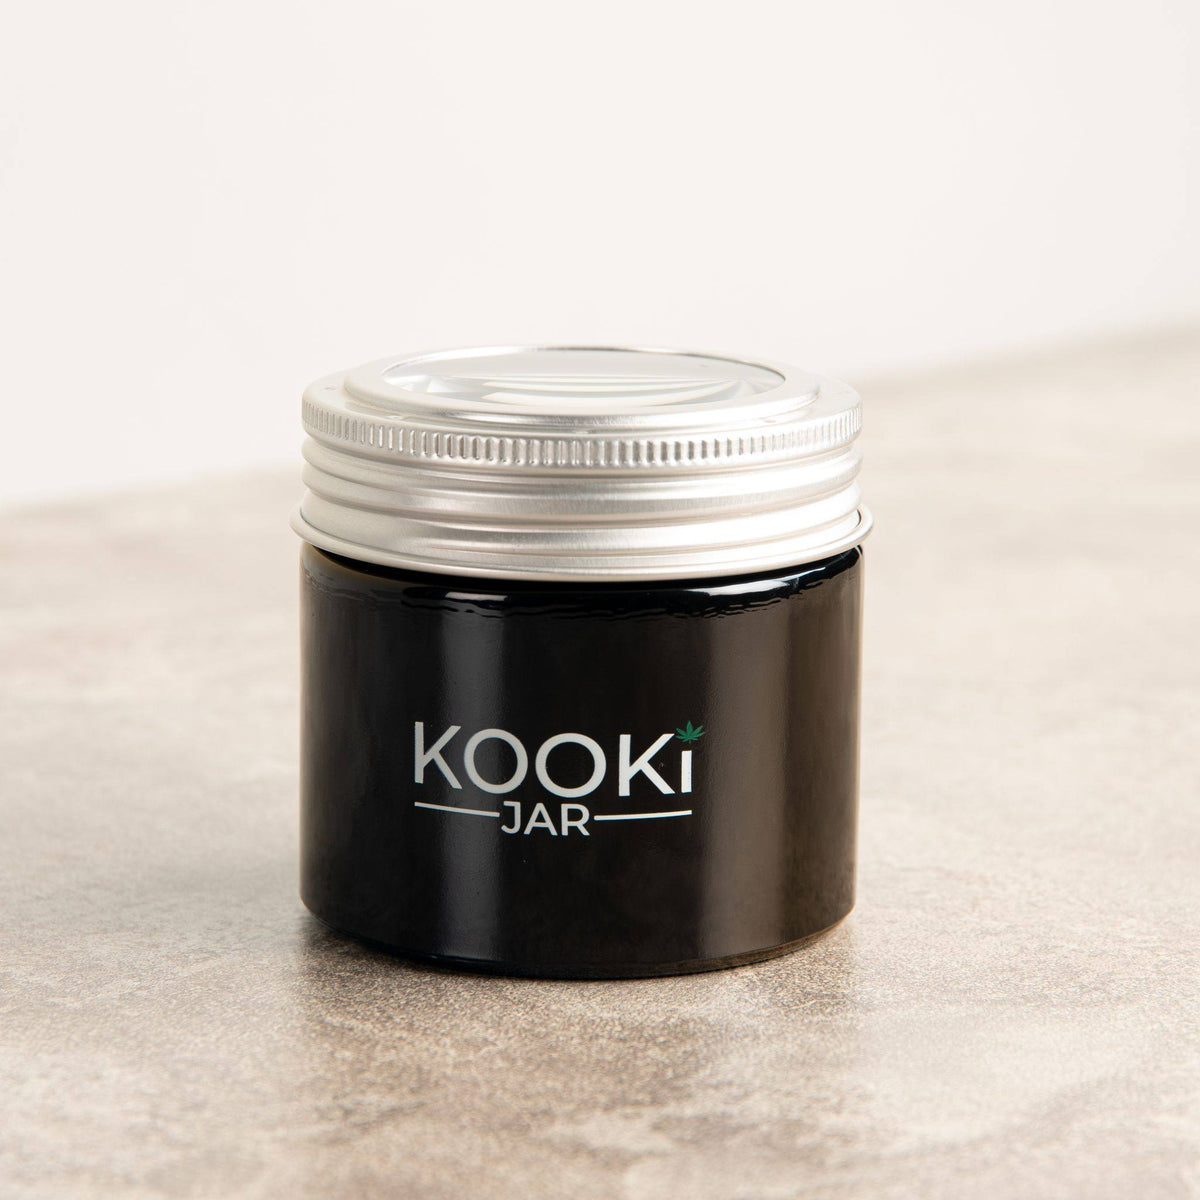 Kooki Jar "The Compact" glass Stash Jar with 5x Magnifying Lid